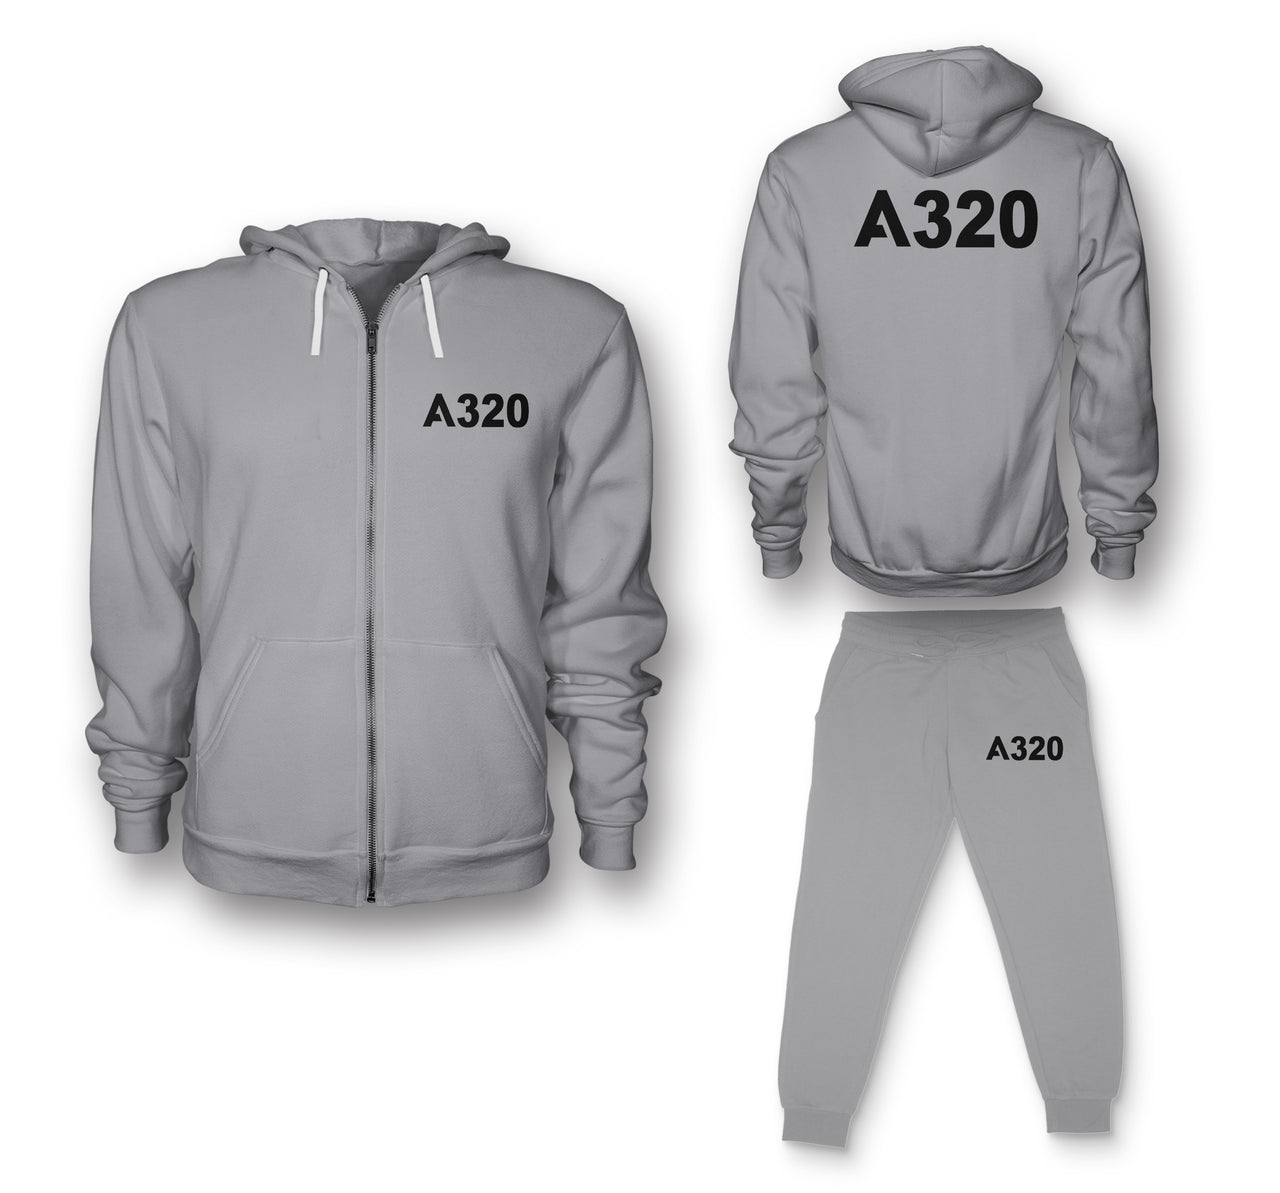 A320 Flat Text Designed Zipped Hoodies & Sweatpants Set